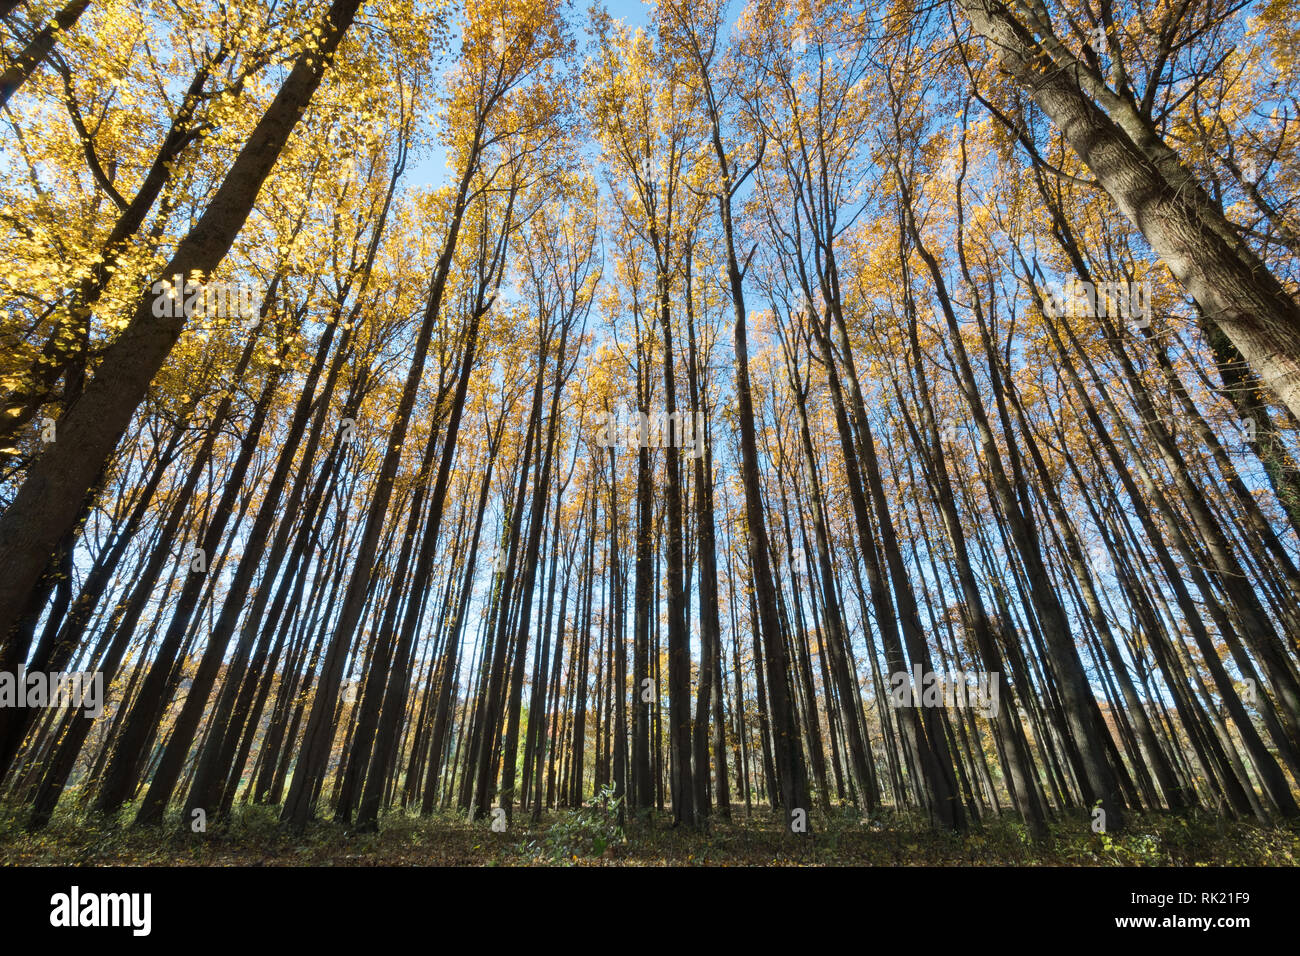 Il legno di alberi di alto fusto con foglie di giallo con un cielo blu in background. Foto Stock